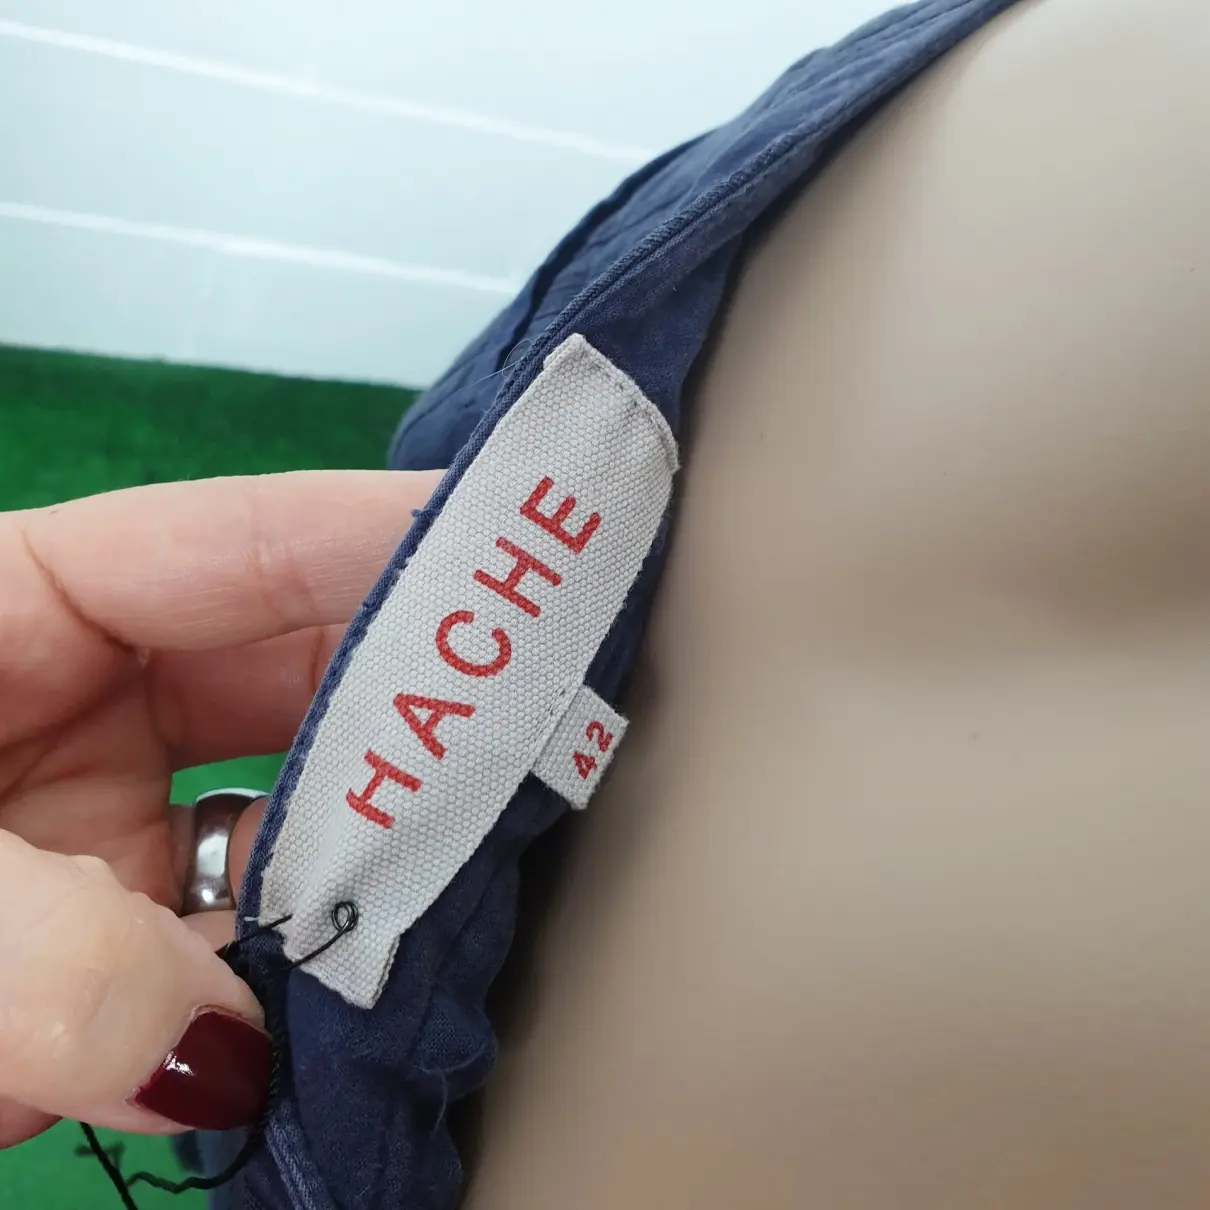 Hache Short pants for sale